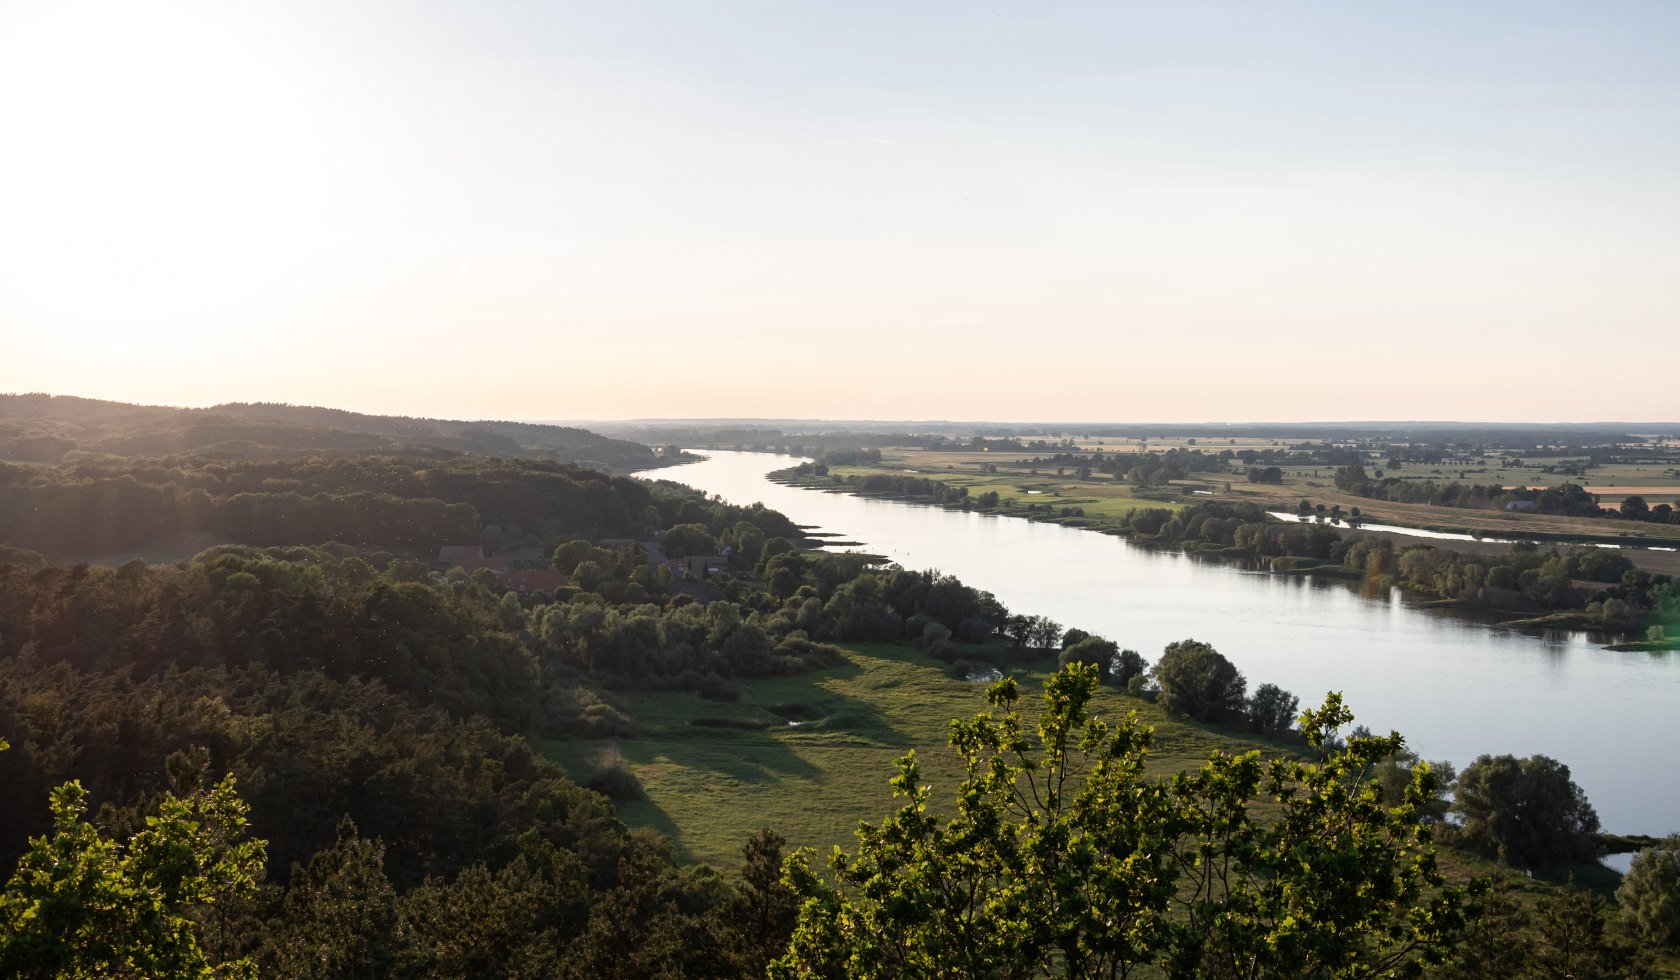 Der Blick auf die Elbtalaue vom Aussichtsturm Kniepenberg , © Marketingbüro Wendland.Elbe